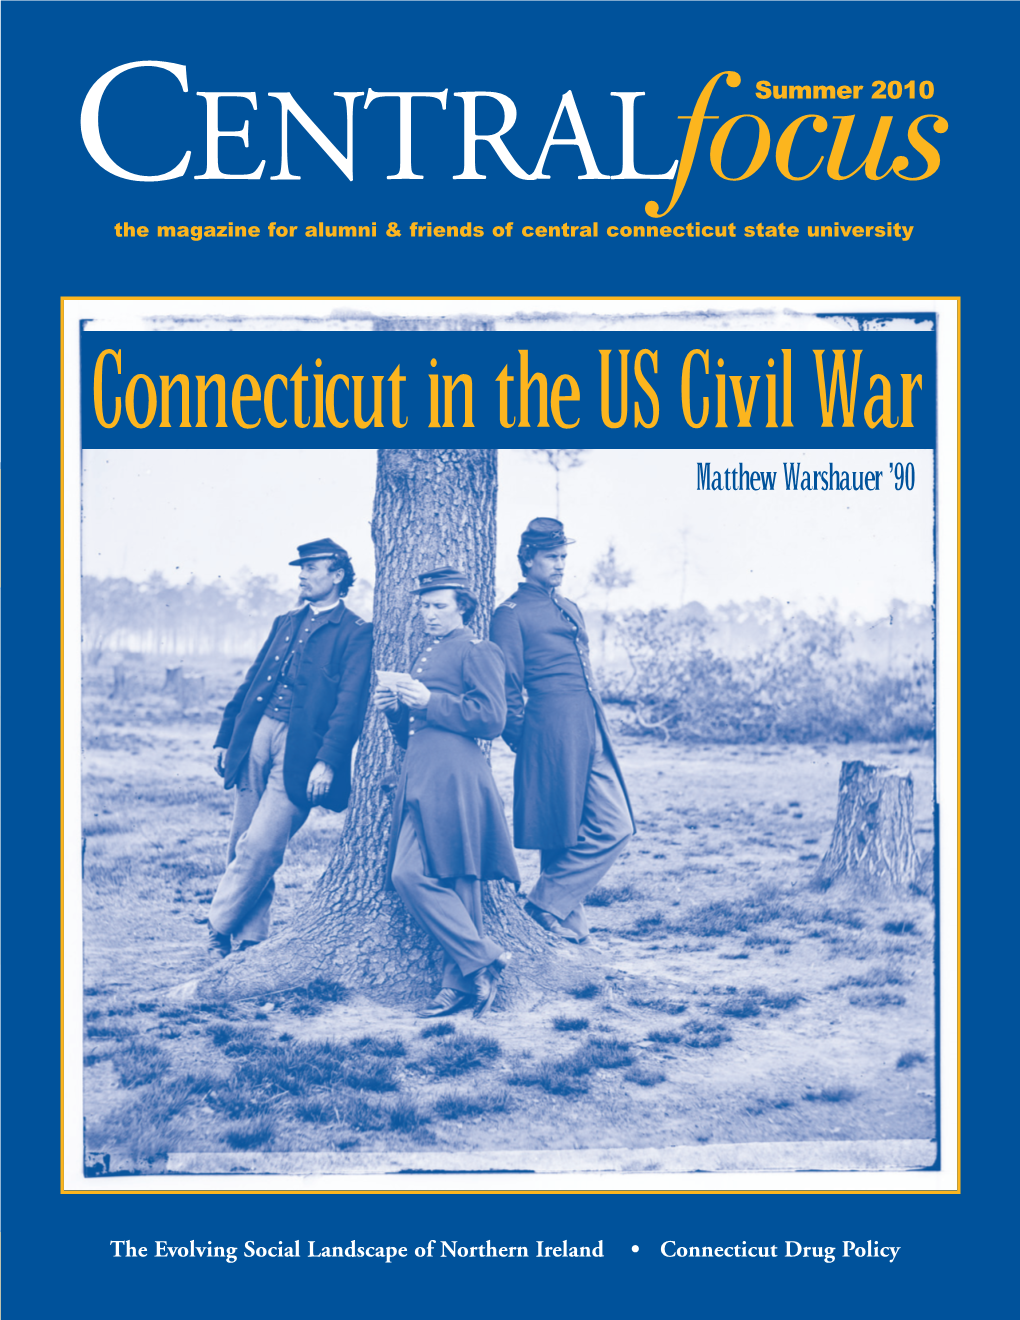 Connecticut in the US Civil War Matthew Warshauer ’90